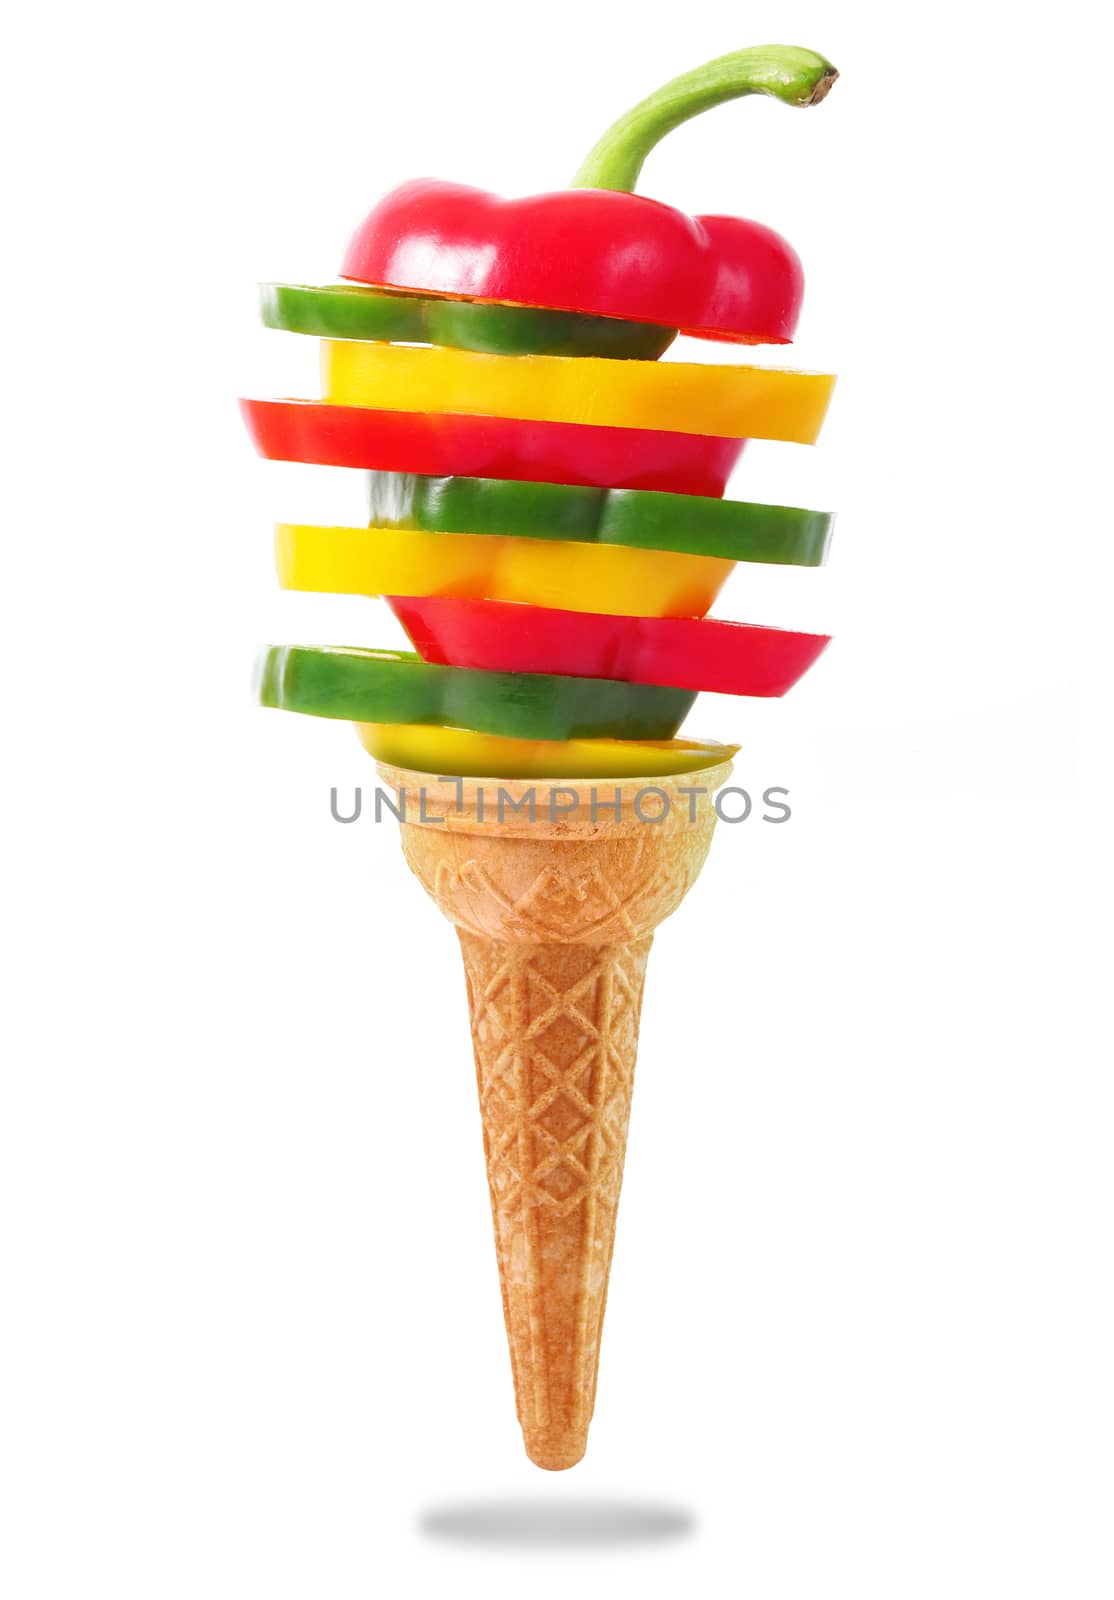 a Delicious ice cream cone with pepper taste